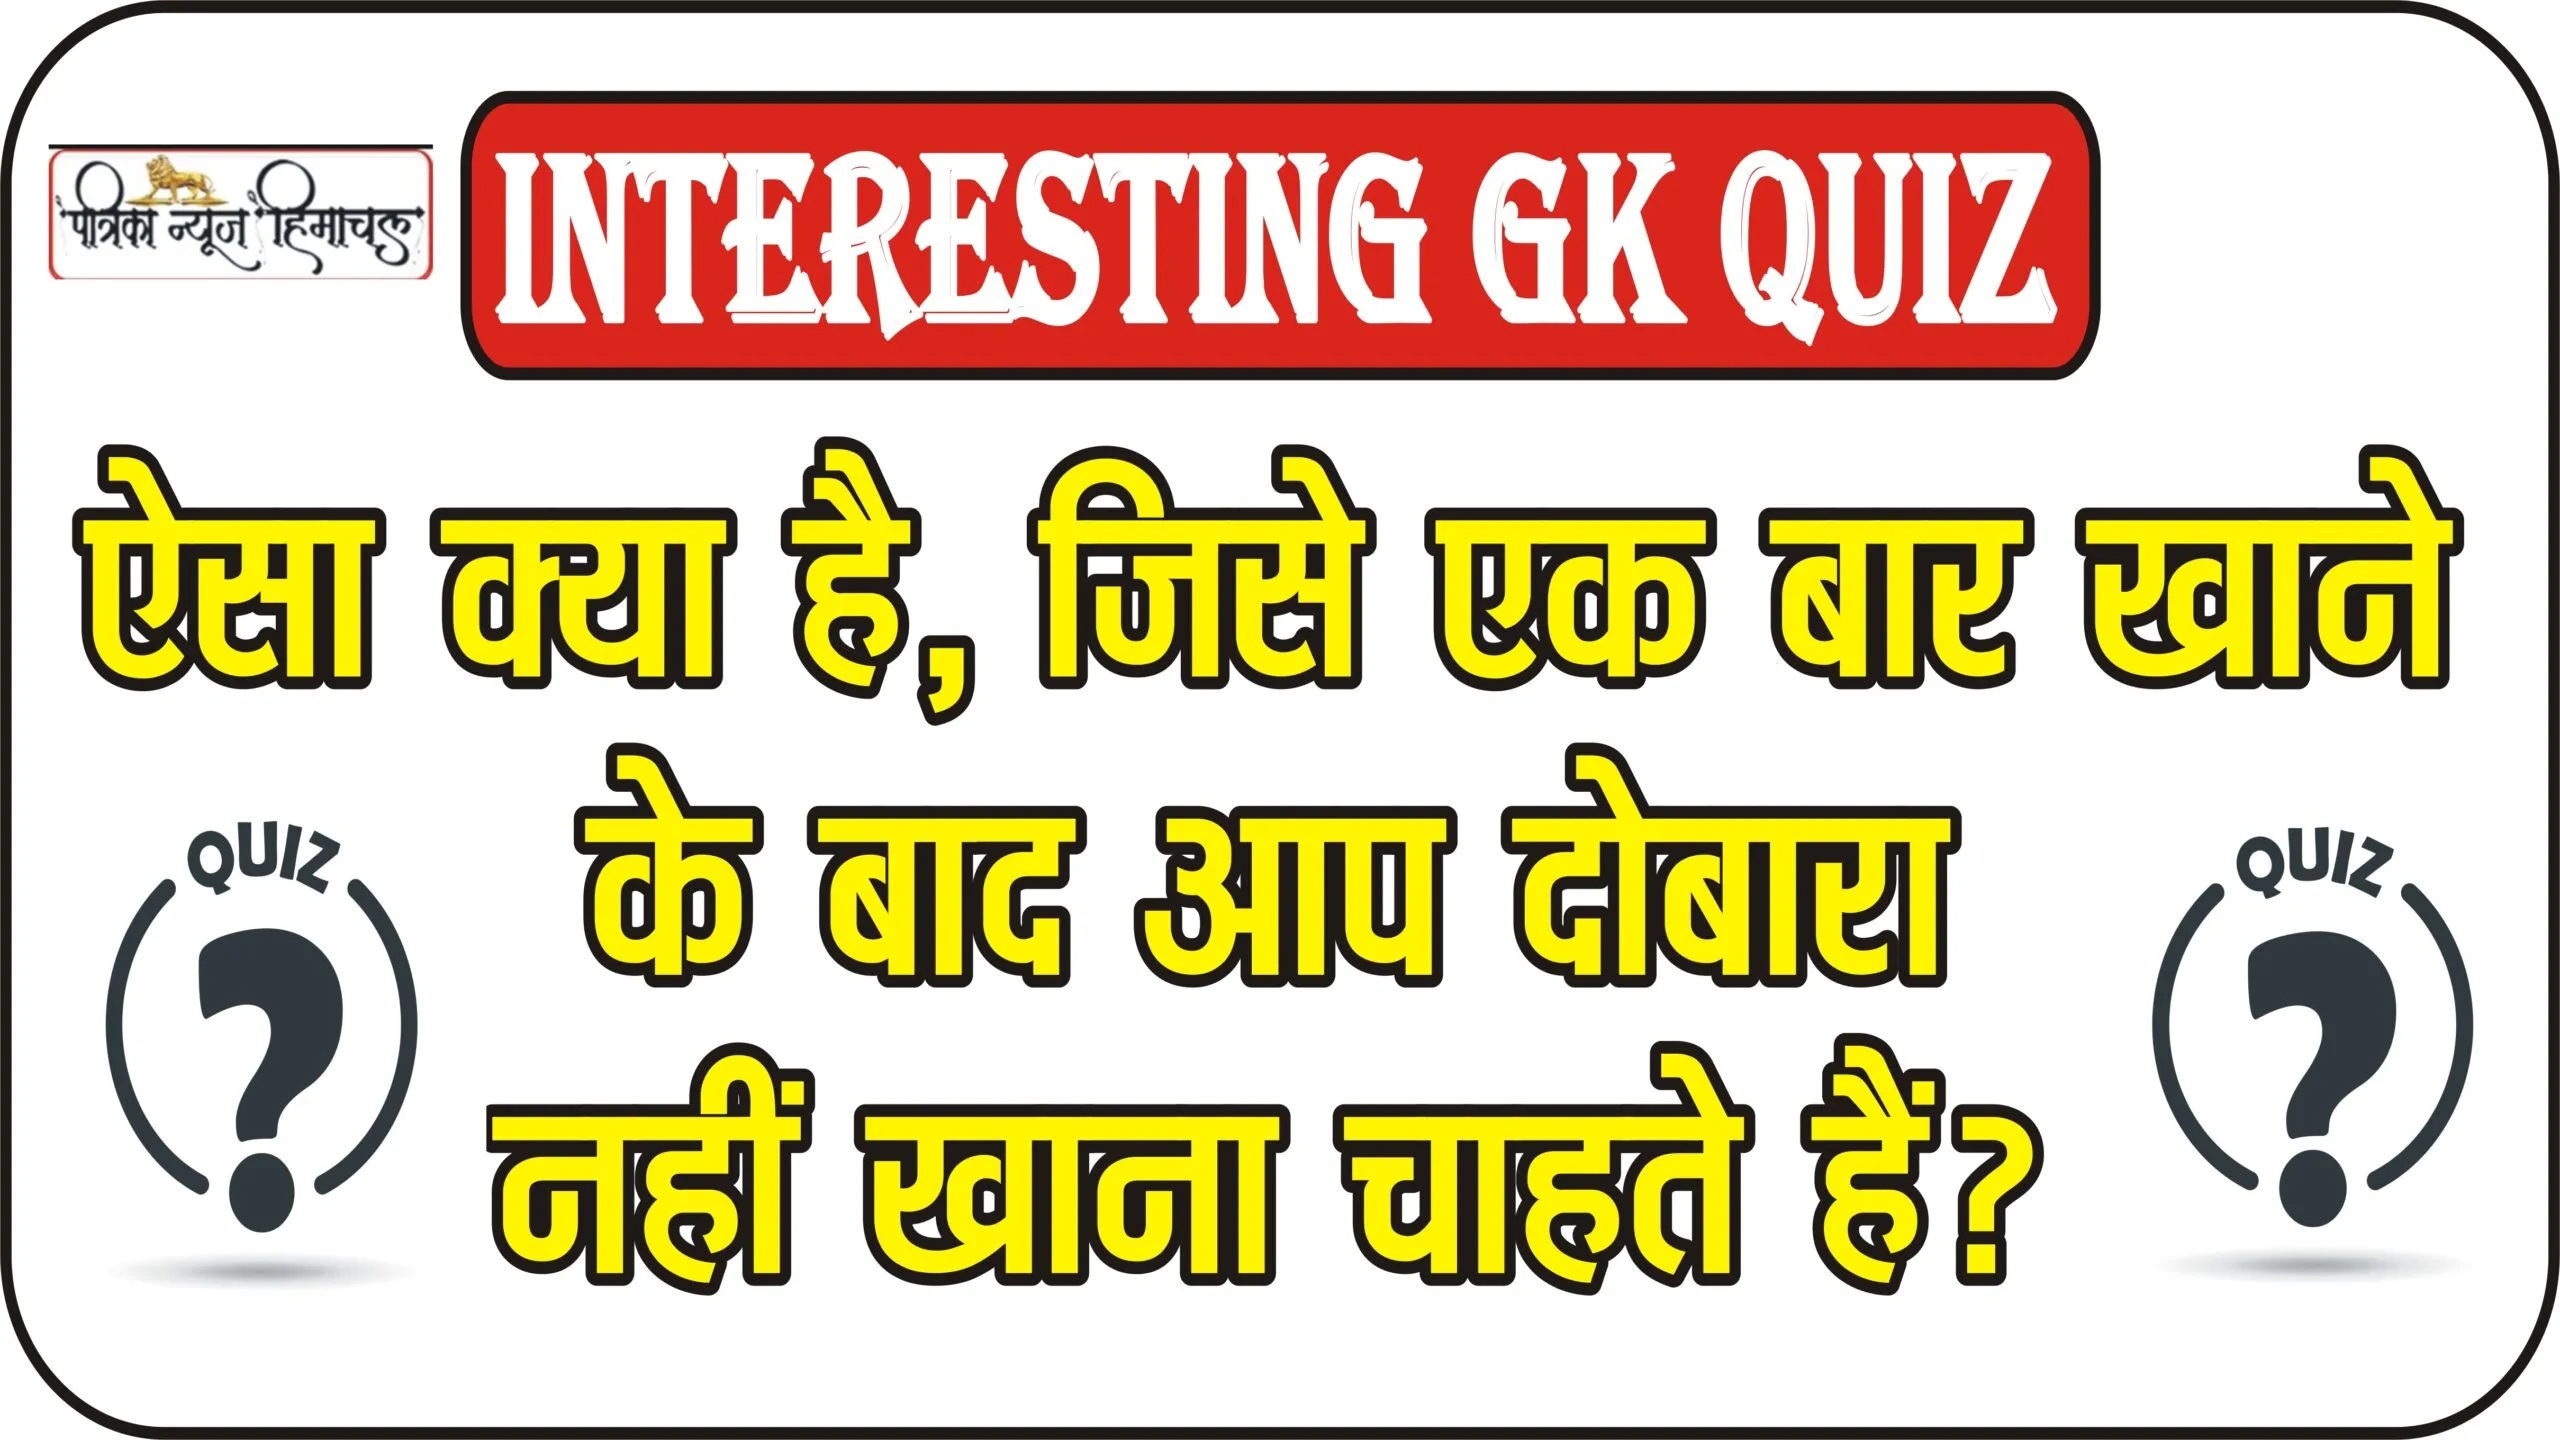 Interesting GK Quiz || ऐसा क्या है, जिसे एक बार खाने के बाद आप दोबारा नहीं खाना चाहते हैं?